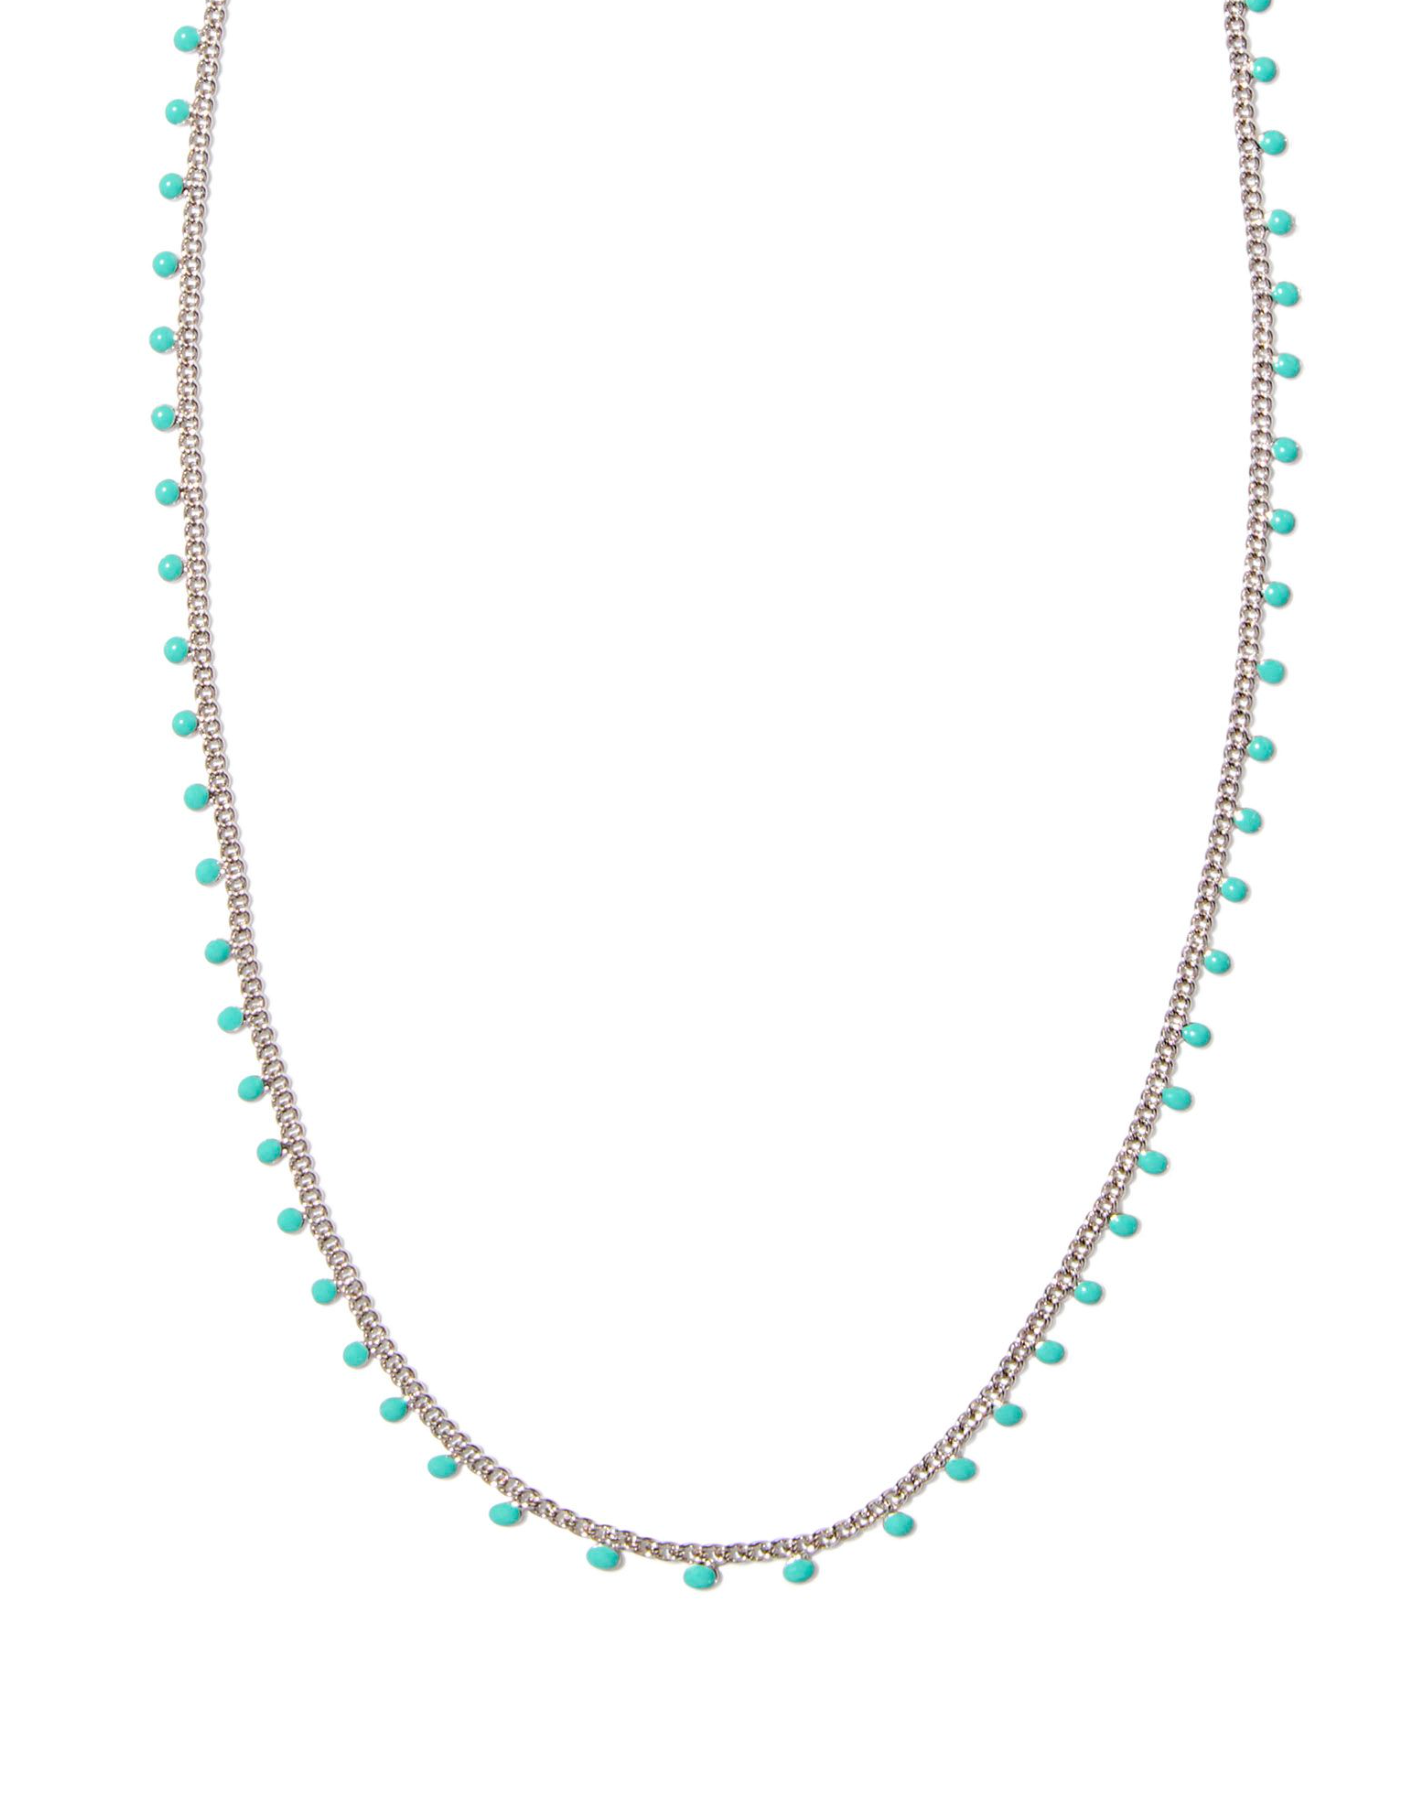 Kelsey Silver Strand Necklace in Turquoise Enamel | KENDRA SCOTT